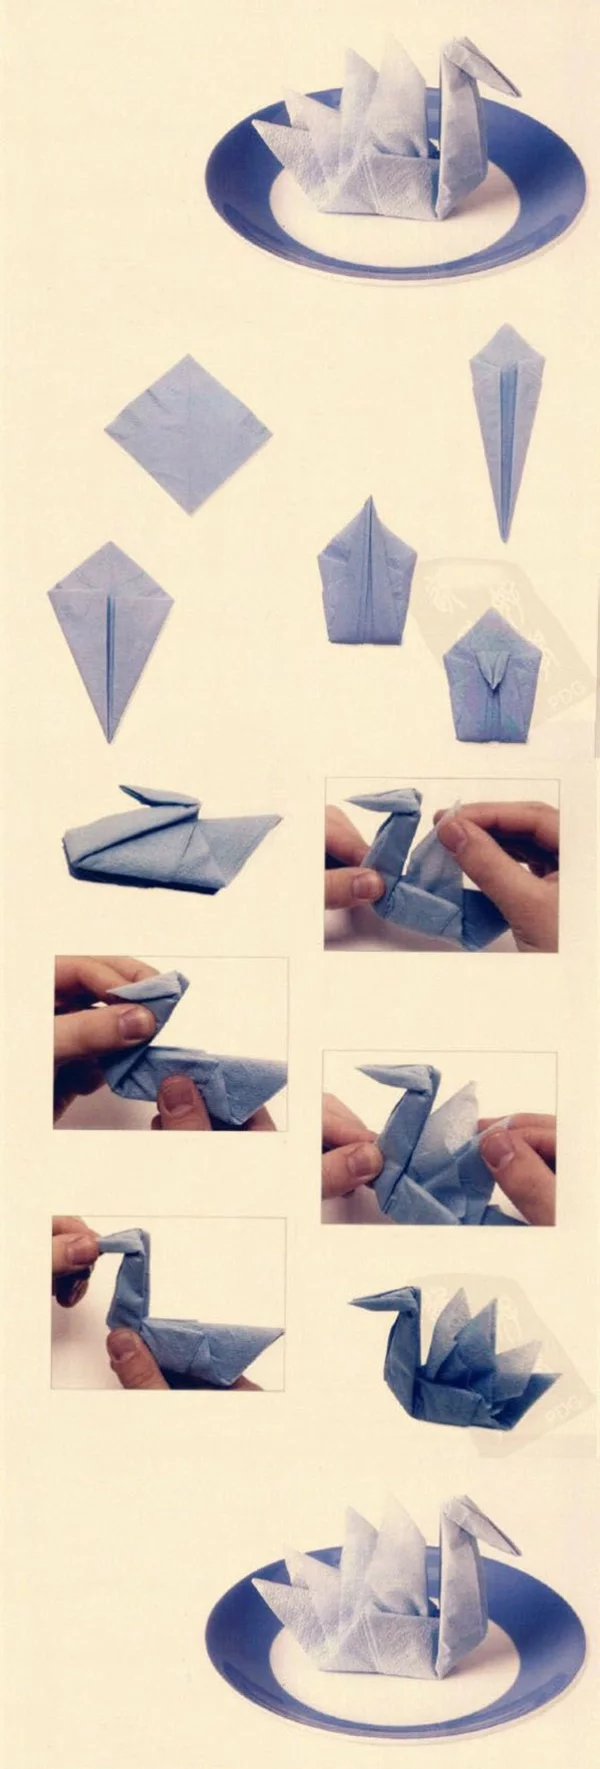 kreative bastelideen papierservietten falten anleitung schwan